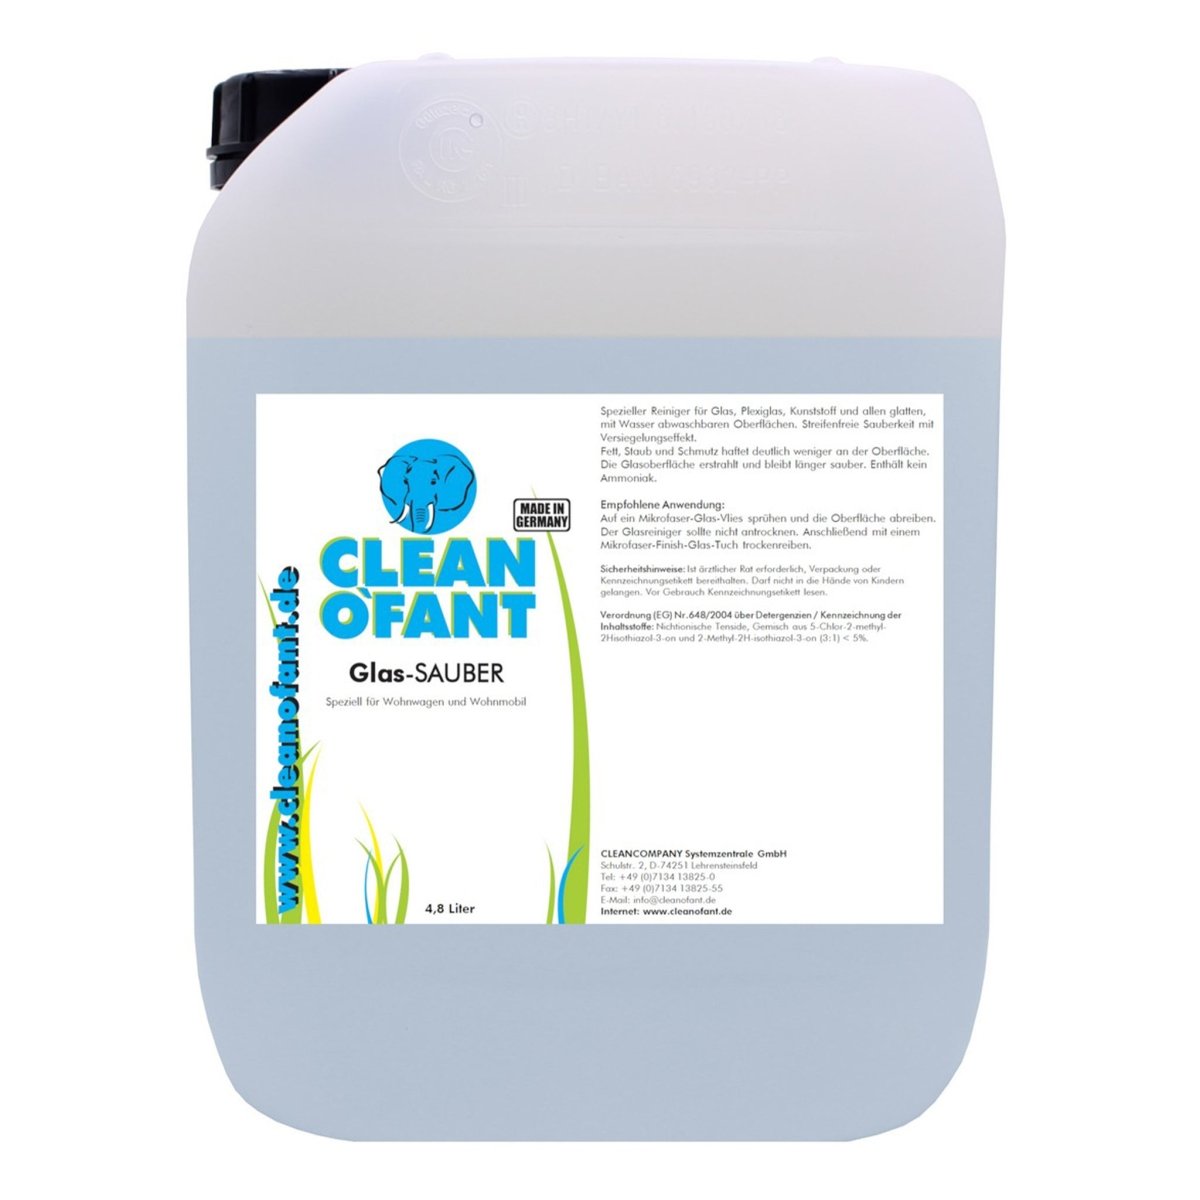 CLEANOFANT Glas-SAUBER (Glasreiniger) 4,8 Liter für Wohnwagen, Wohnmobil, Caravan, Haushalt